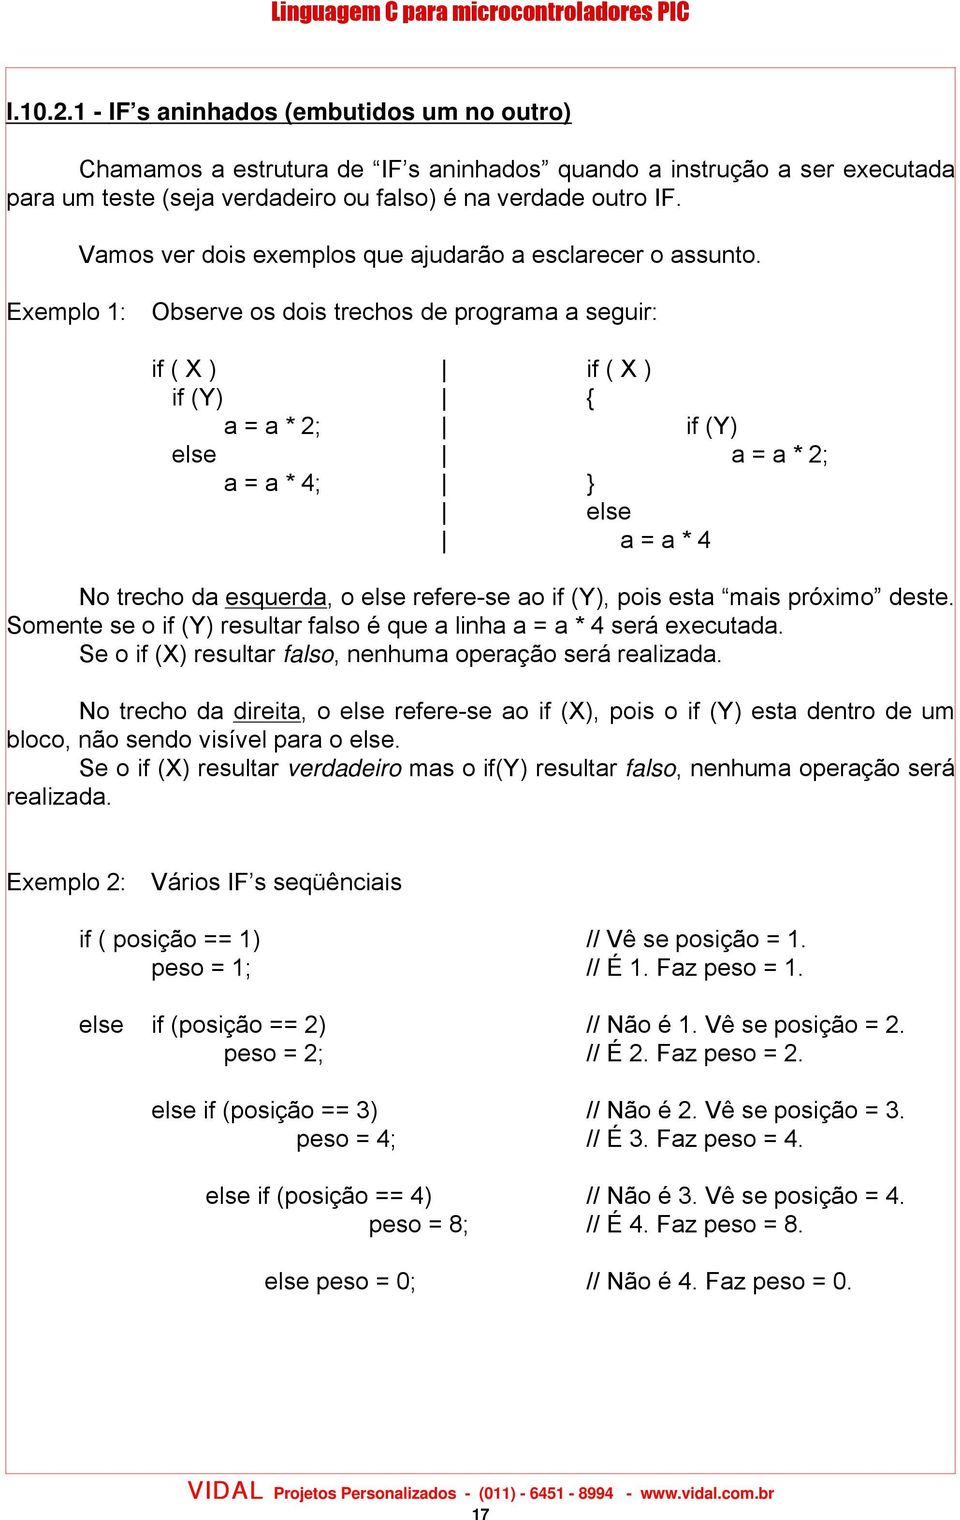 Exemplo 1: Observe os dois trechos de programa a seguir: if ( X ) if ( X ) if (Y) a = a * 2; if (Y) else a = a * 2; a = a * 4; else a = a * 4 No trecho da esquerda, o else refere-se ao if (Y), pois